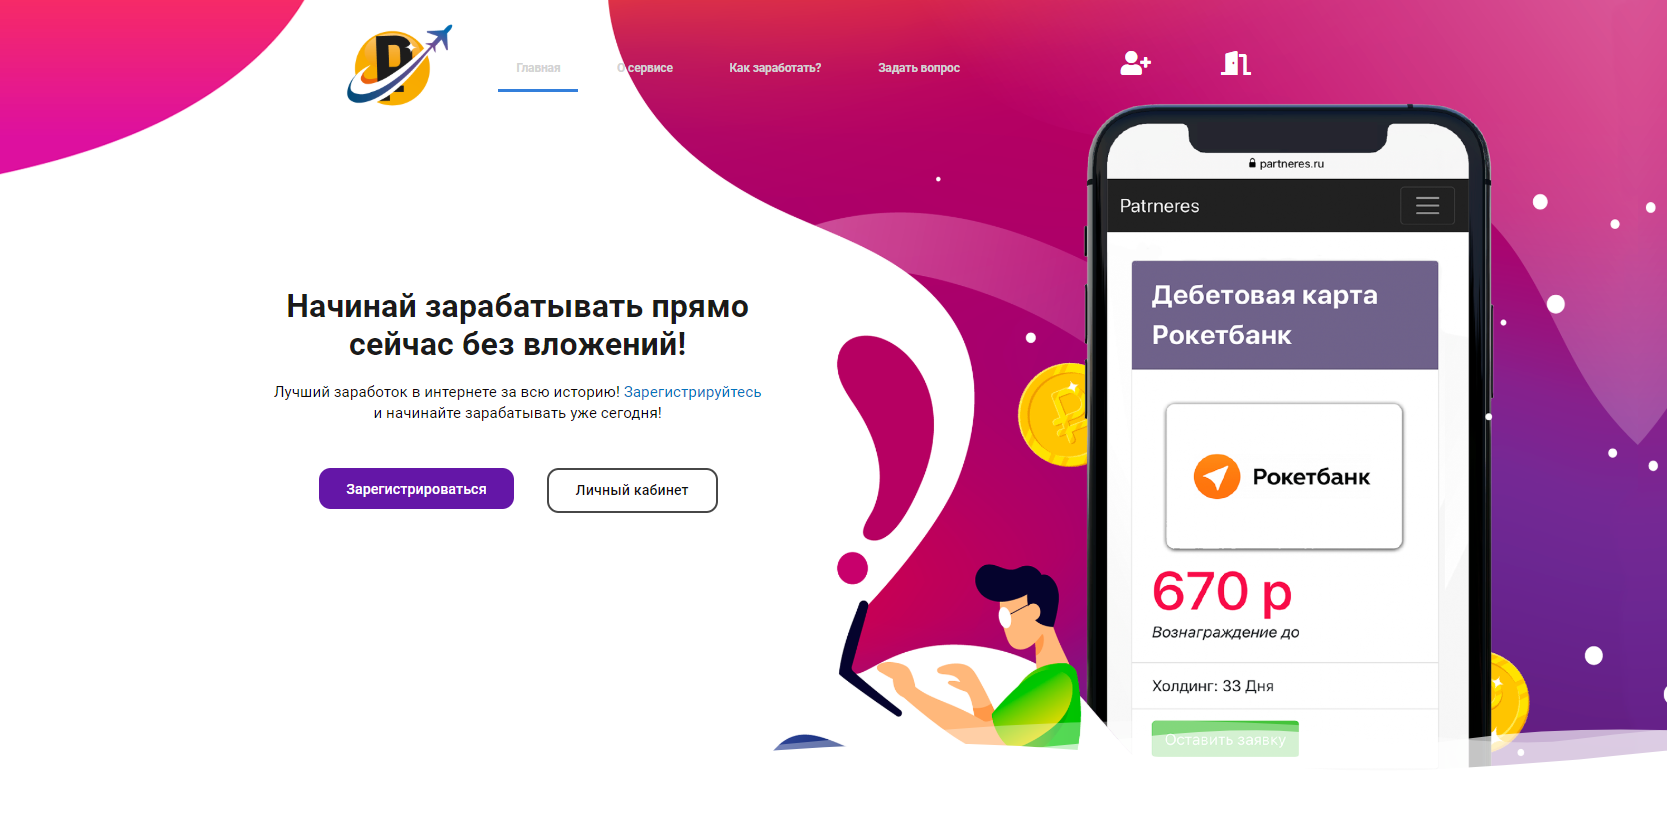 Как зарабатывать в интернете 10 рублей в день?